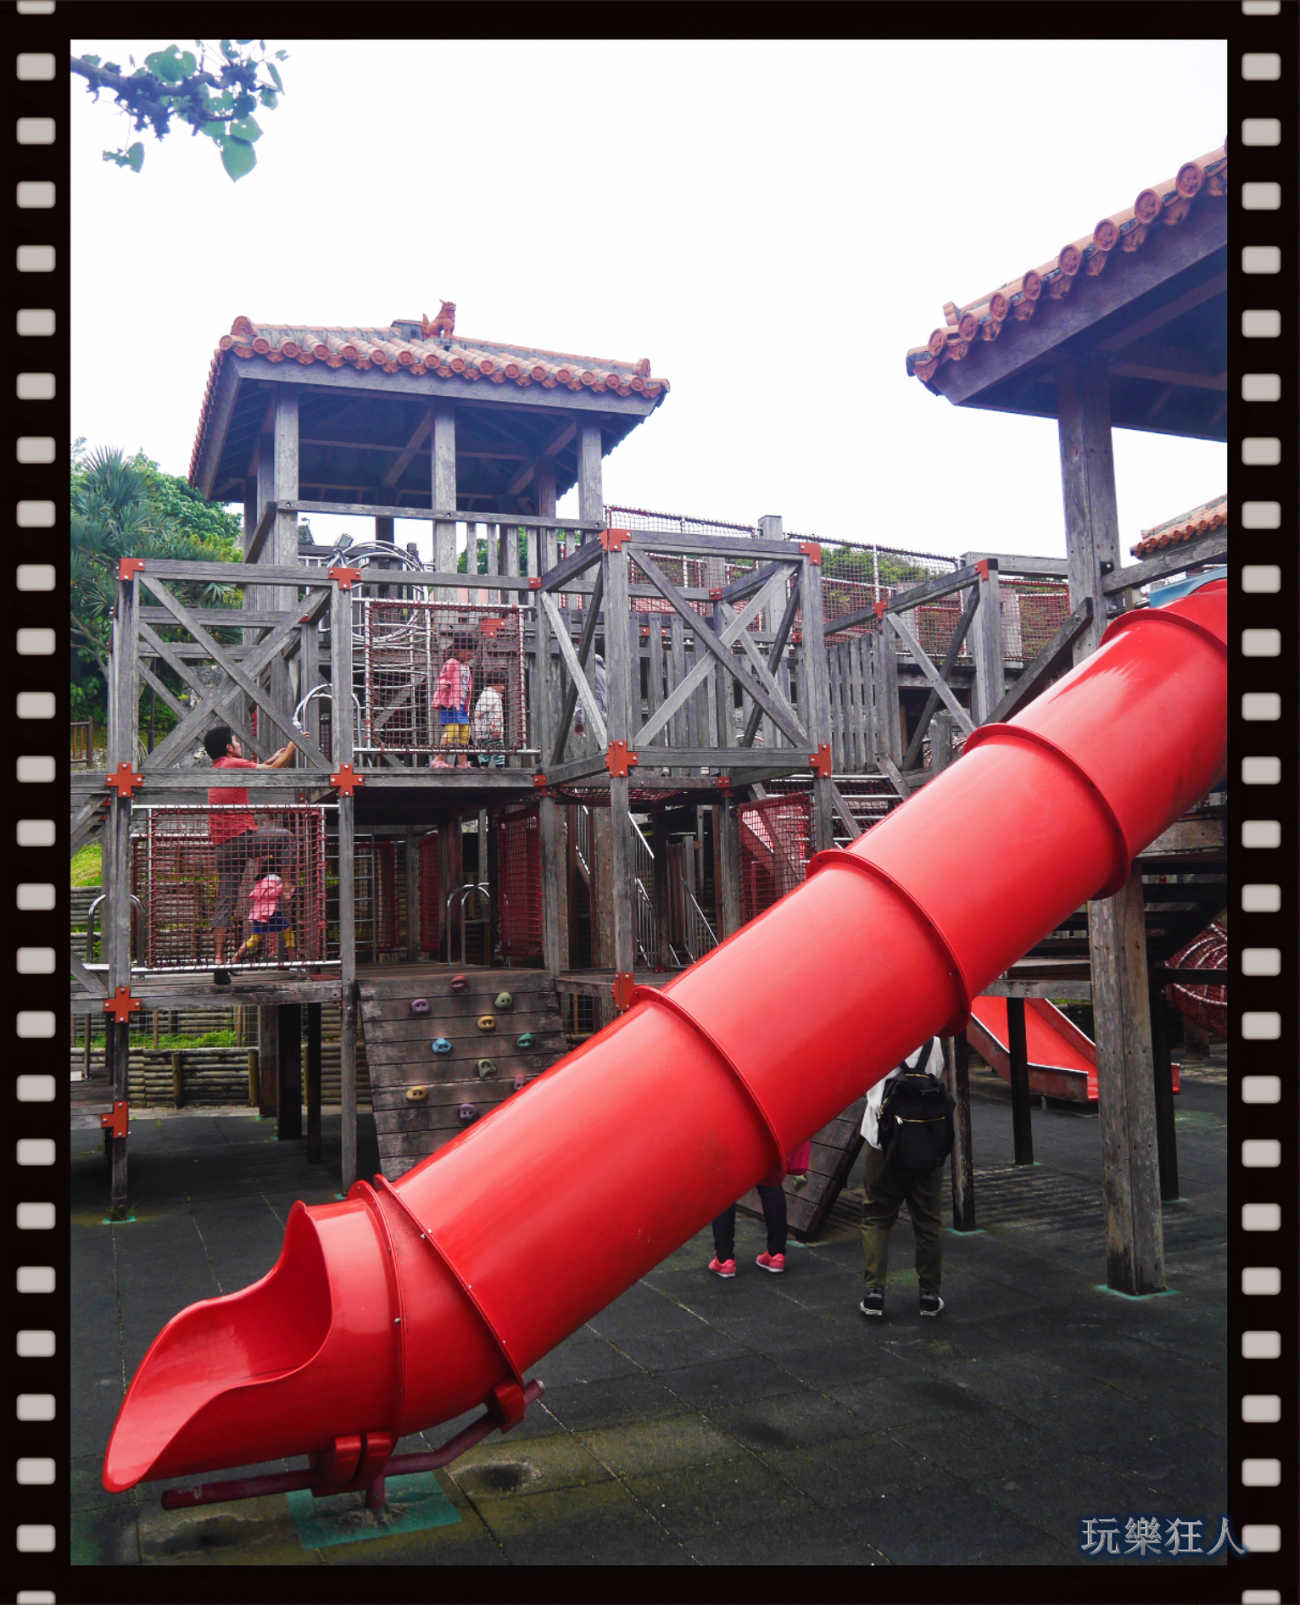 『浦添大公園』圓筒型溜滑梯